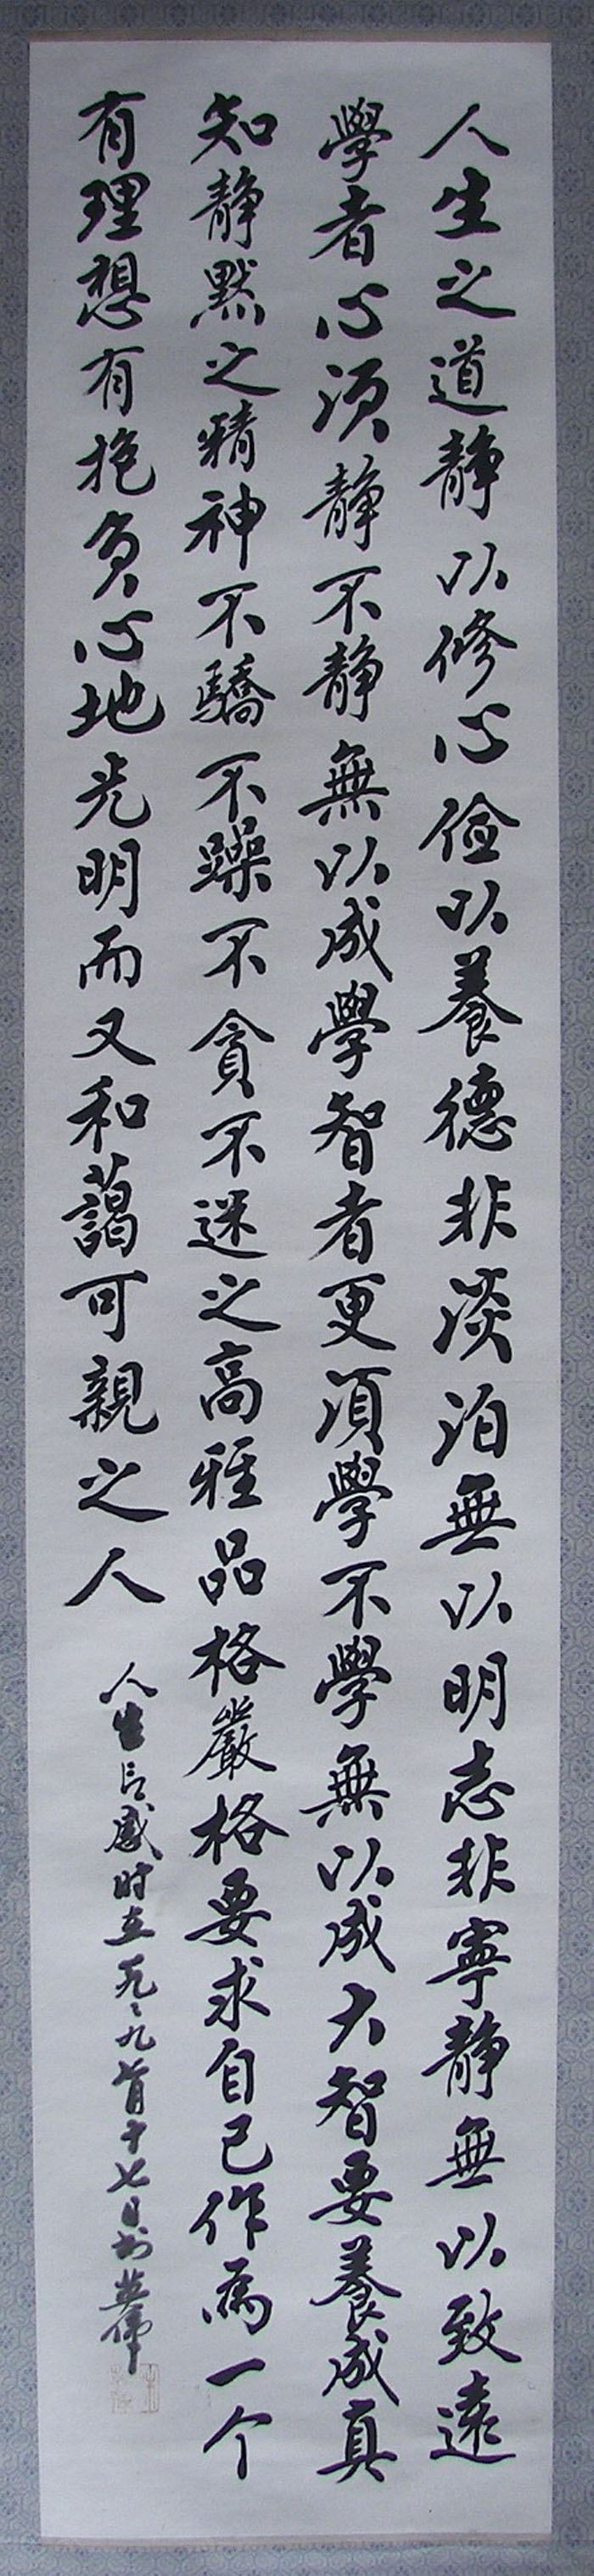 OEEA LamYiWei Calligraphy